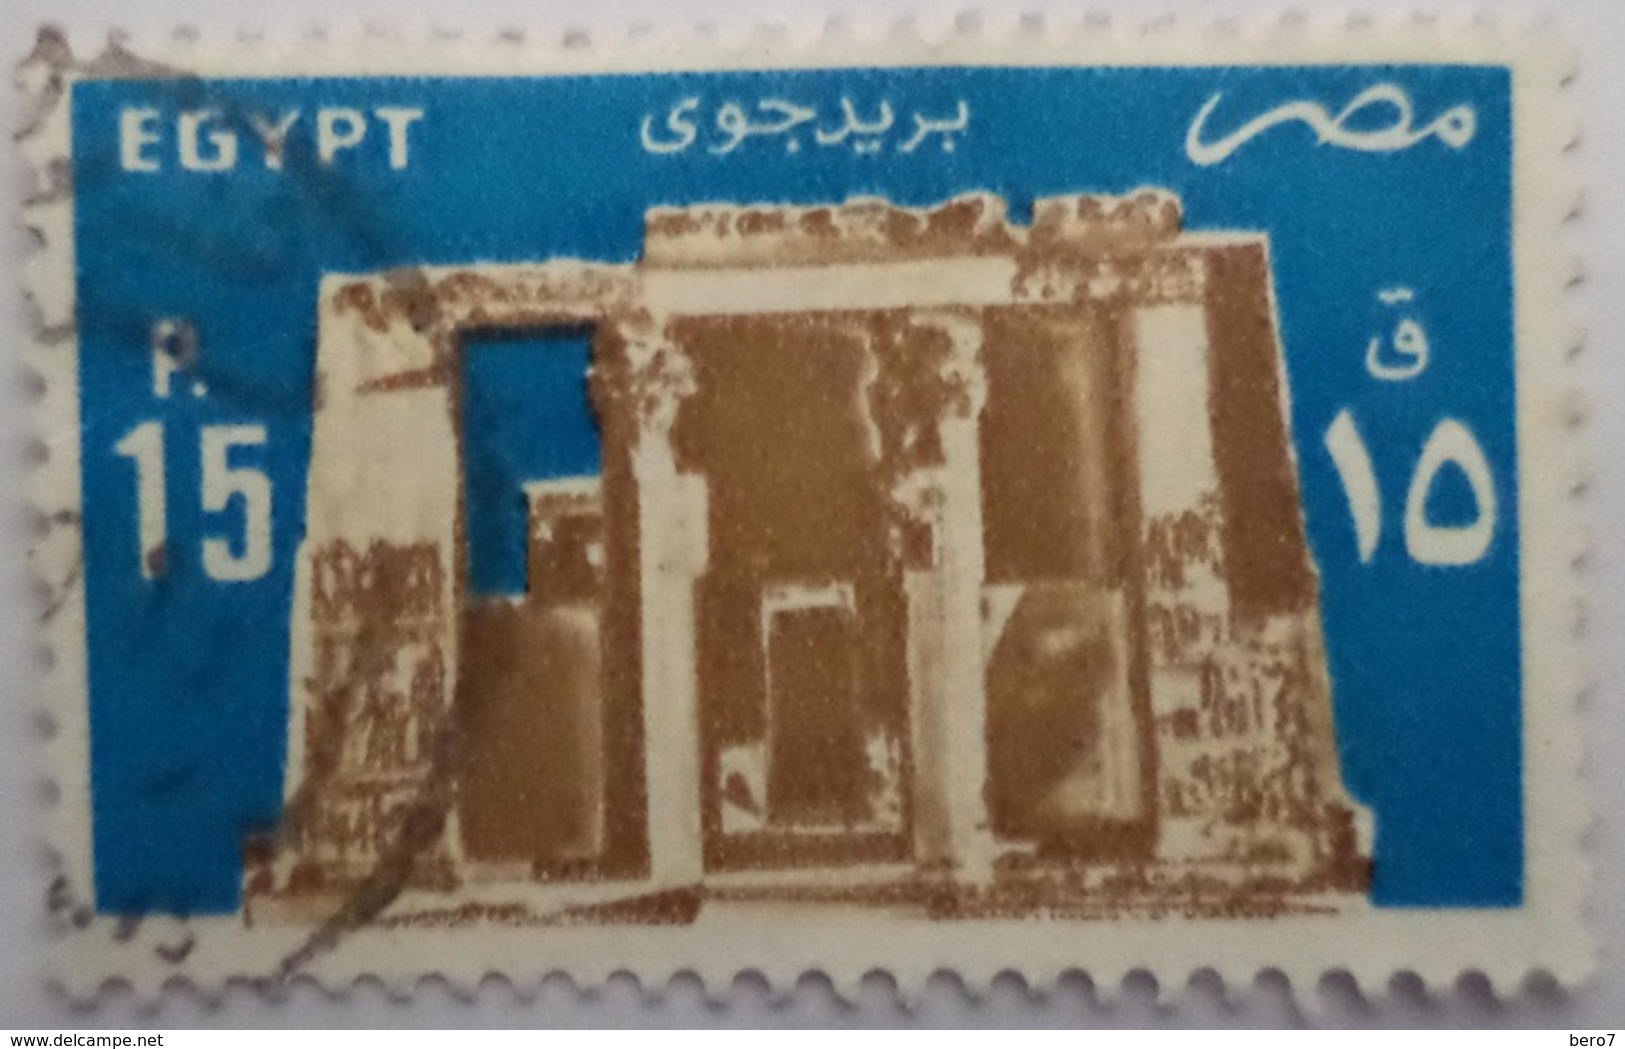 EGYPT - 1985- Temple Of Horus, Edfu - Air Mail -  (Egypte) (Egitto) (Ägypten) (Egipto) (Egypten) - Used Stamps